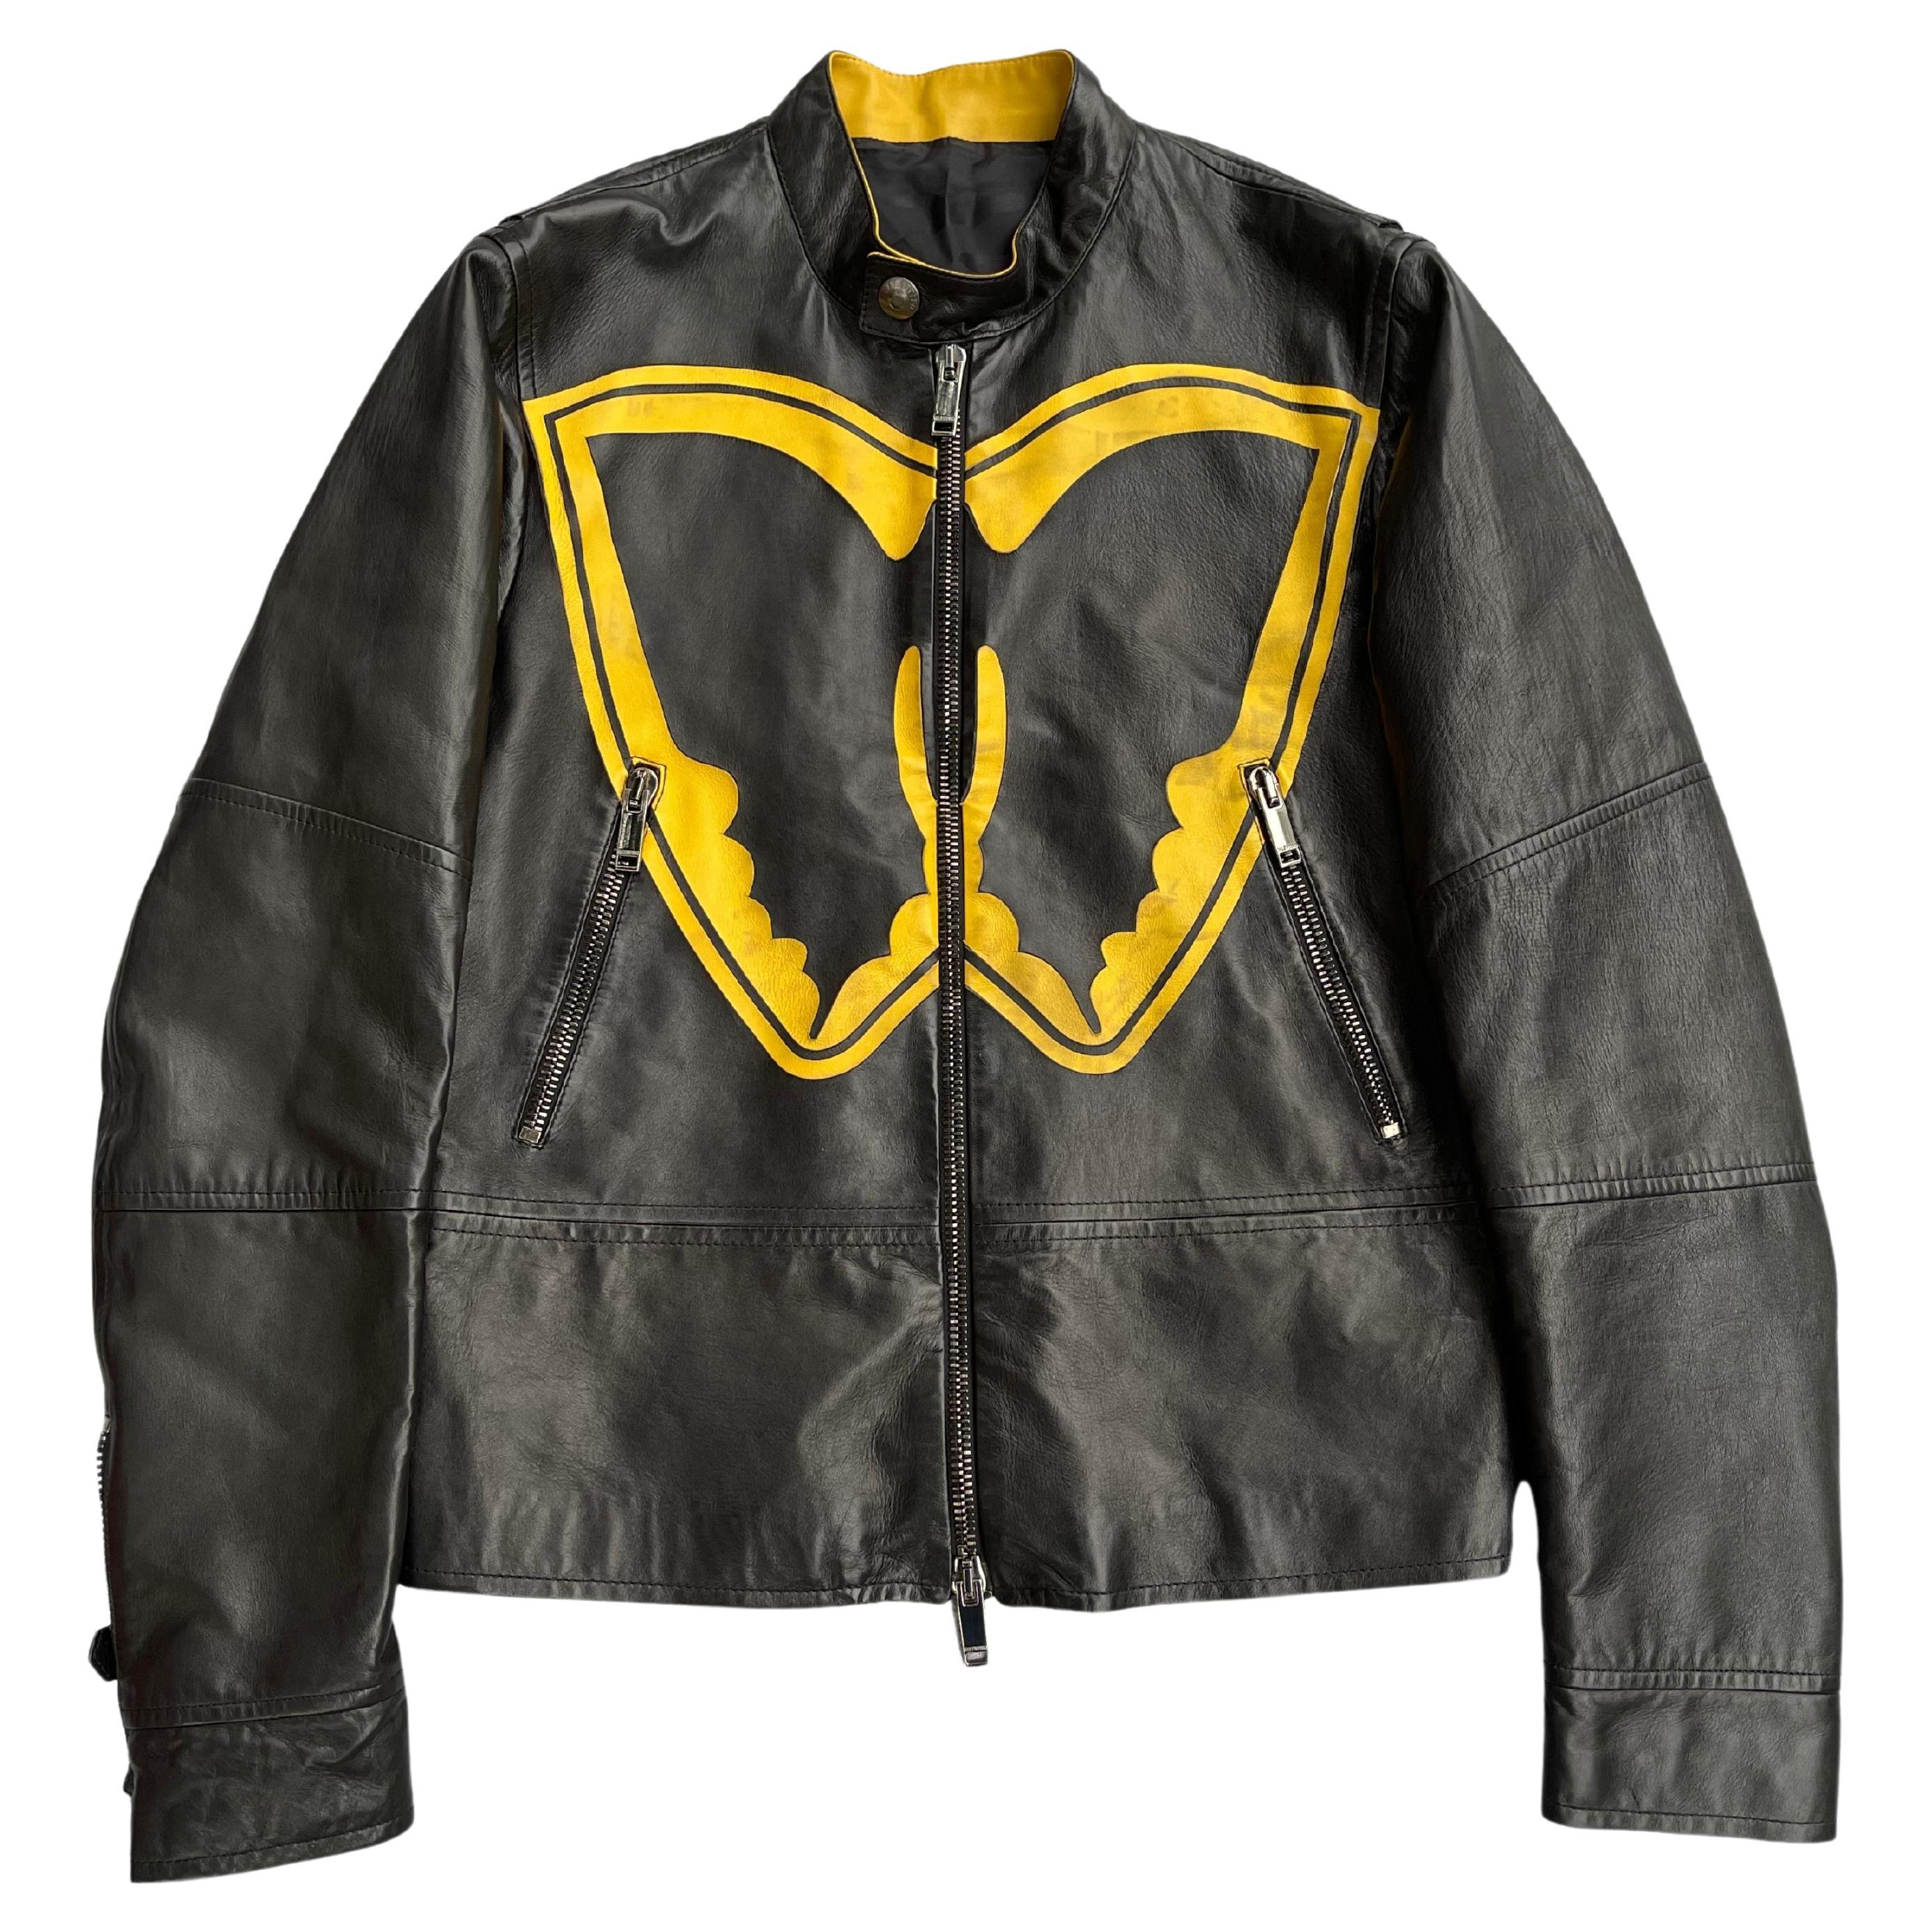 Jeff Hamilton Pinball Wizard The Who Tour Leather Jacket For